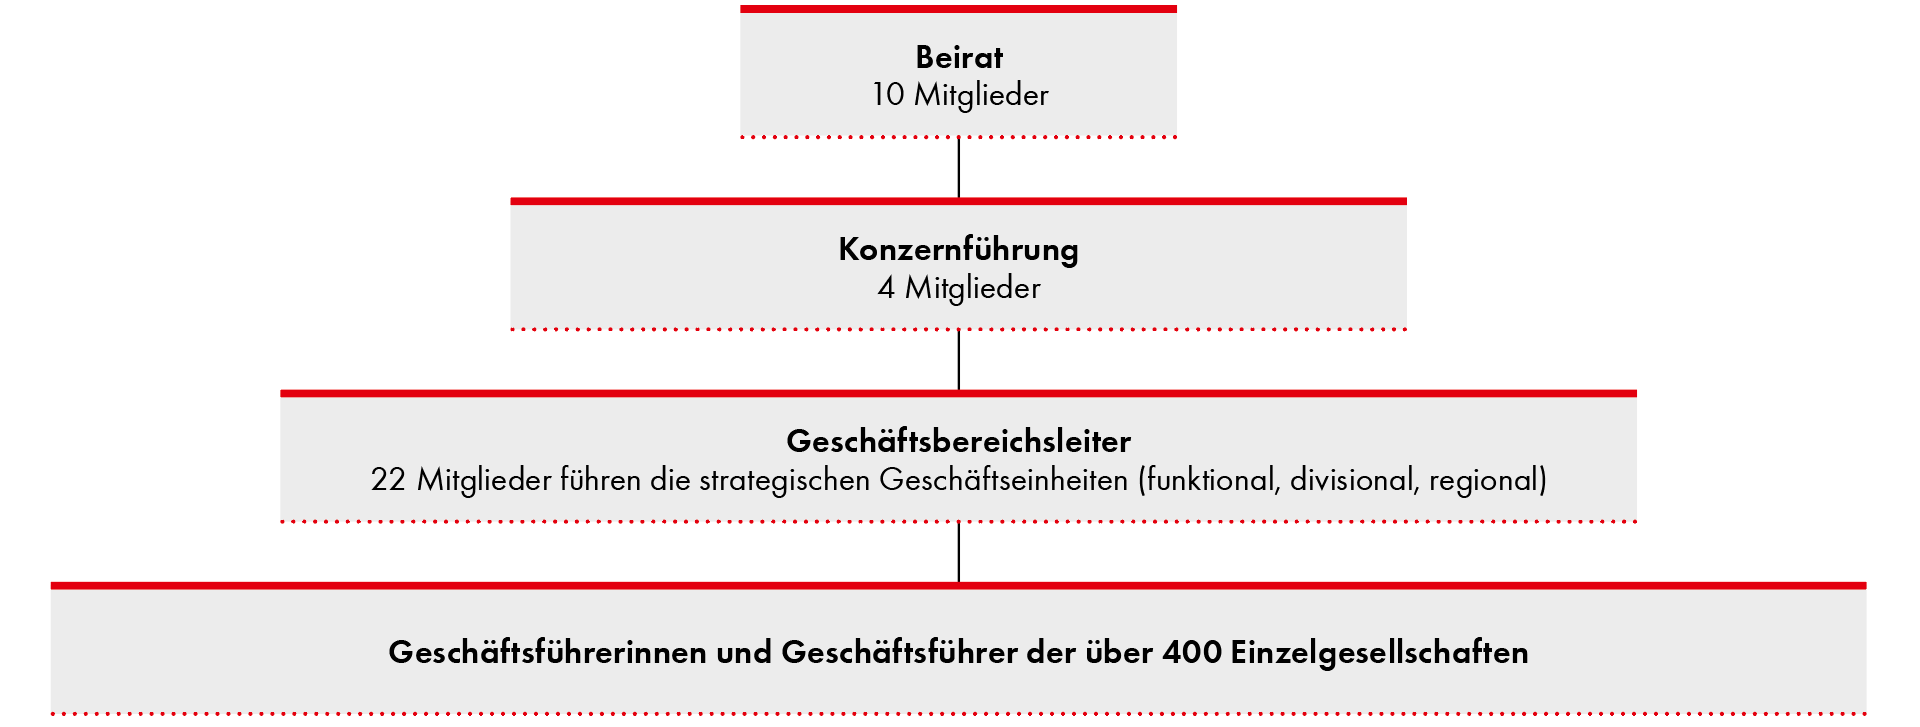 Würth-Gruppe:  Organisatorische Struktur